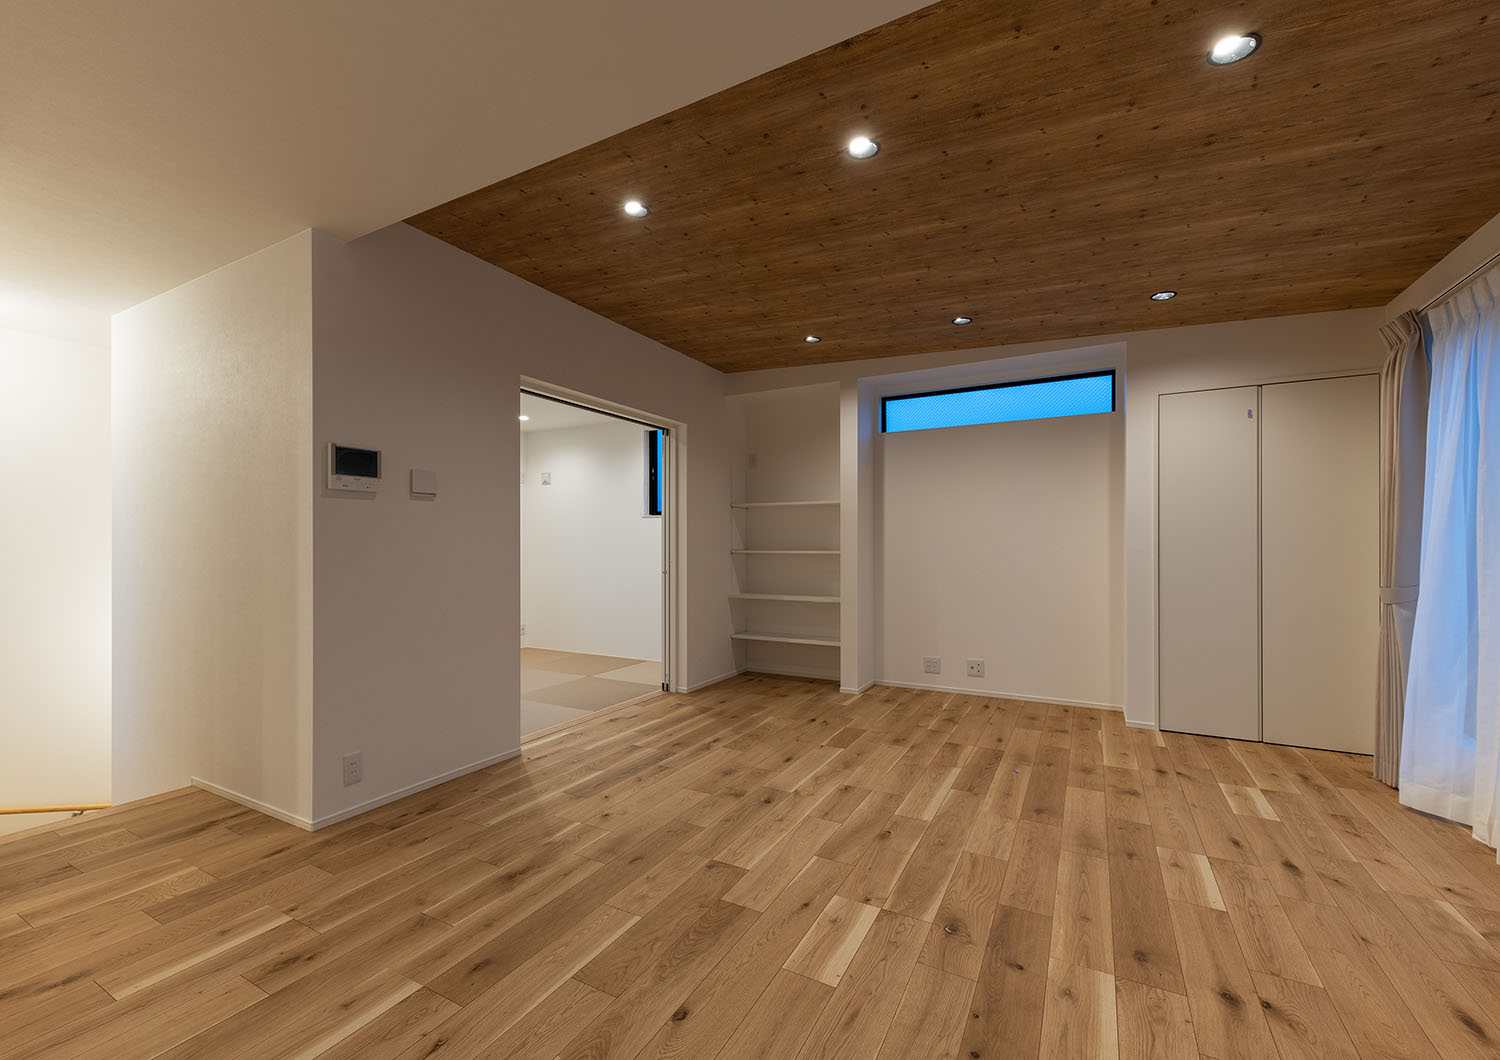 木目の天井と白い天井が切り替わっているLDK・デザイン住宅